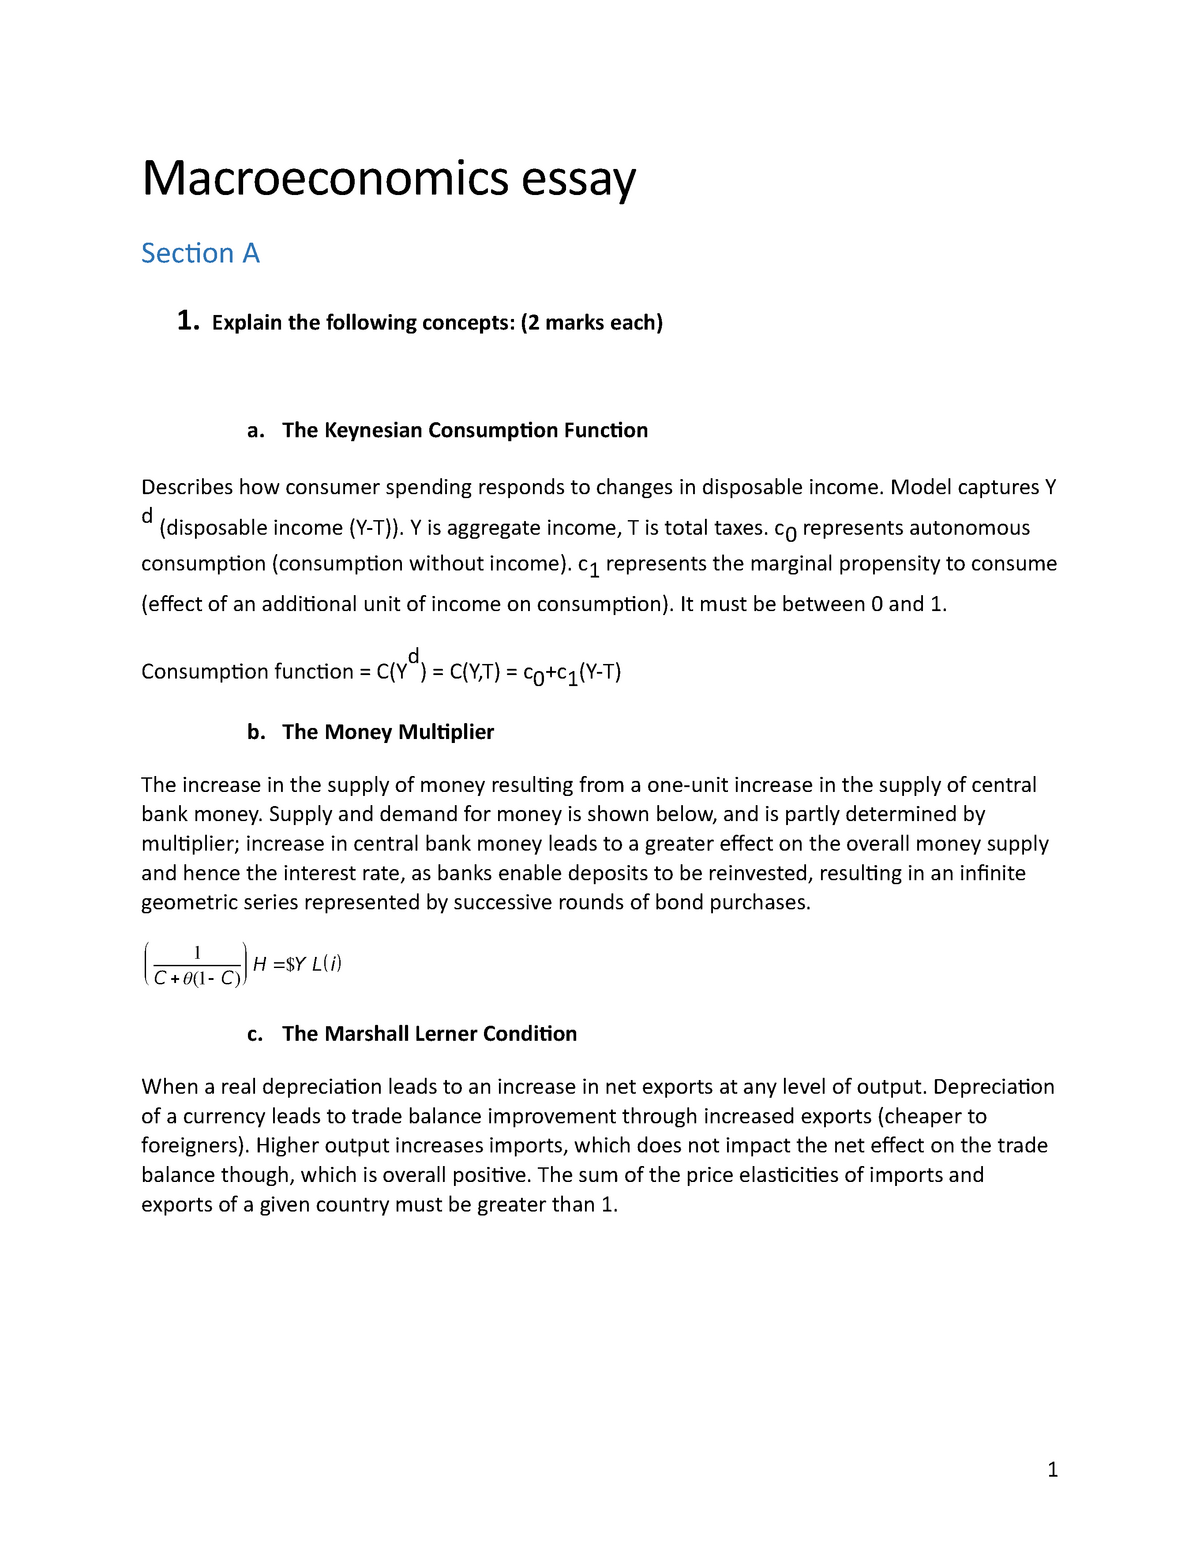 macroeconomics paper